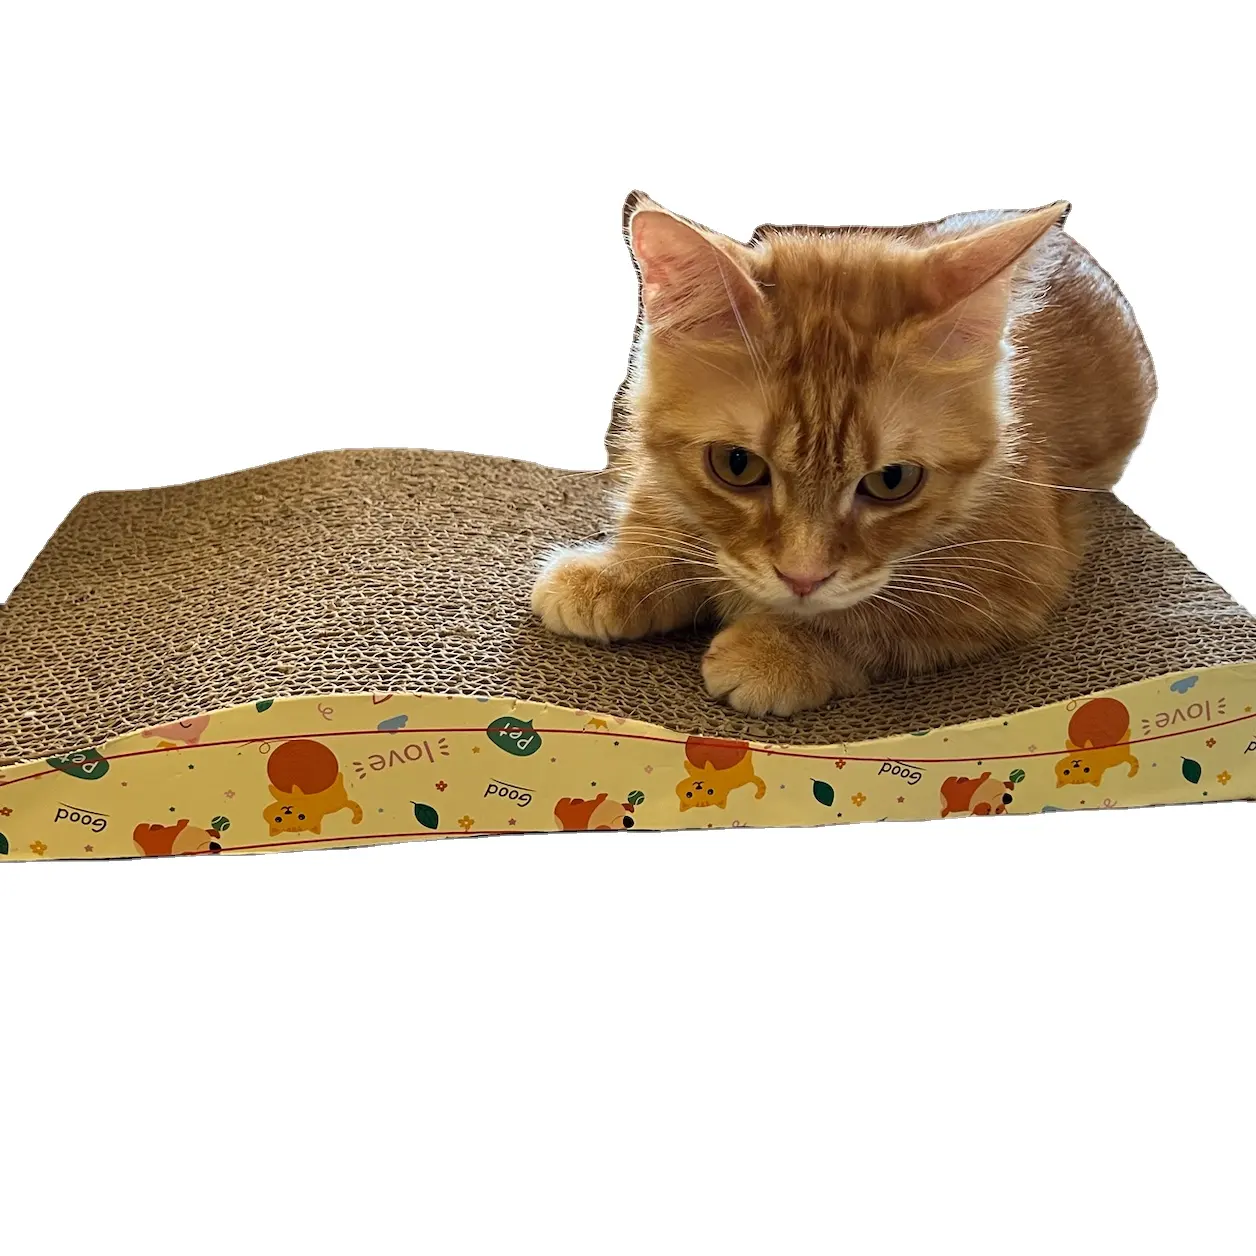 Kedi tırmalamak masası, kartondan yapılmış, bu yüzden kedinin pençelerinin çok keskin olması konusunda endişelenmenize gerek yok. WINVN //bayan Christin